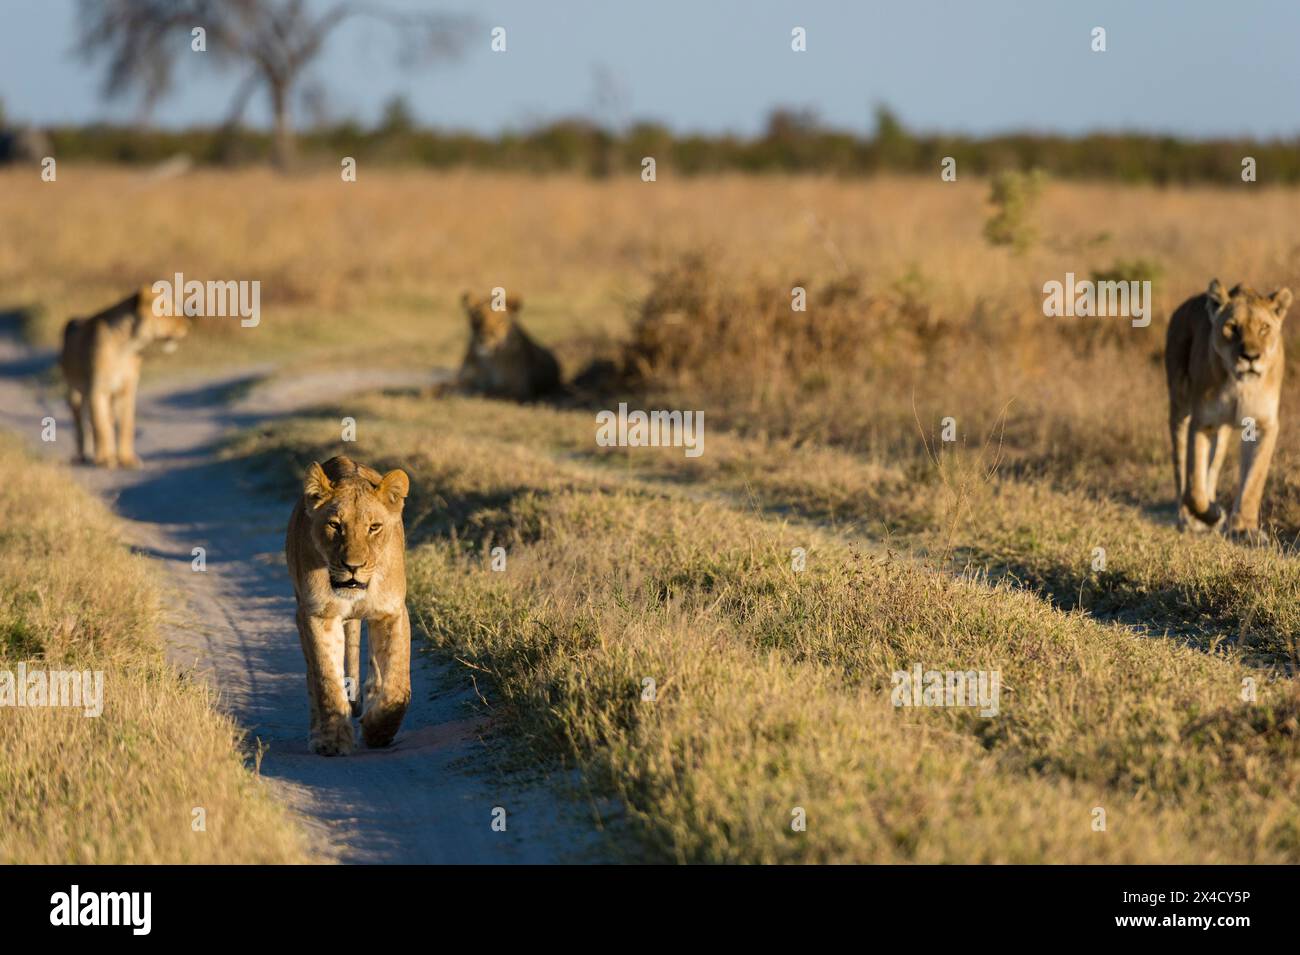 Lions, Panthera leo, de la Marsh Pride, marchant à la recherche de nourriture.Savuti, parc national de Chobe, Botswana Banque D'Images